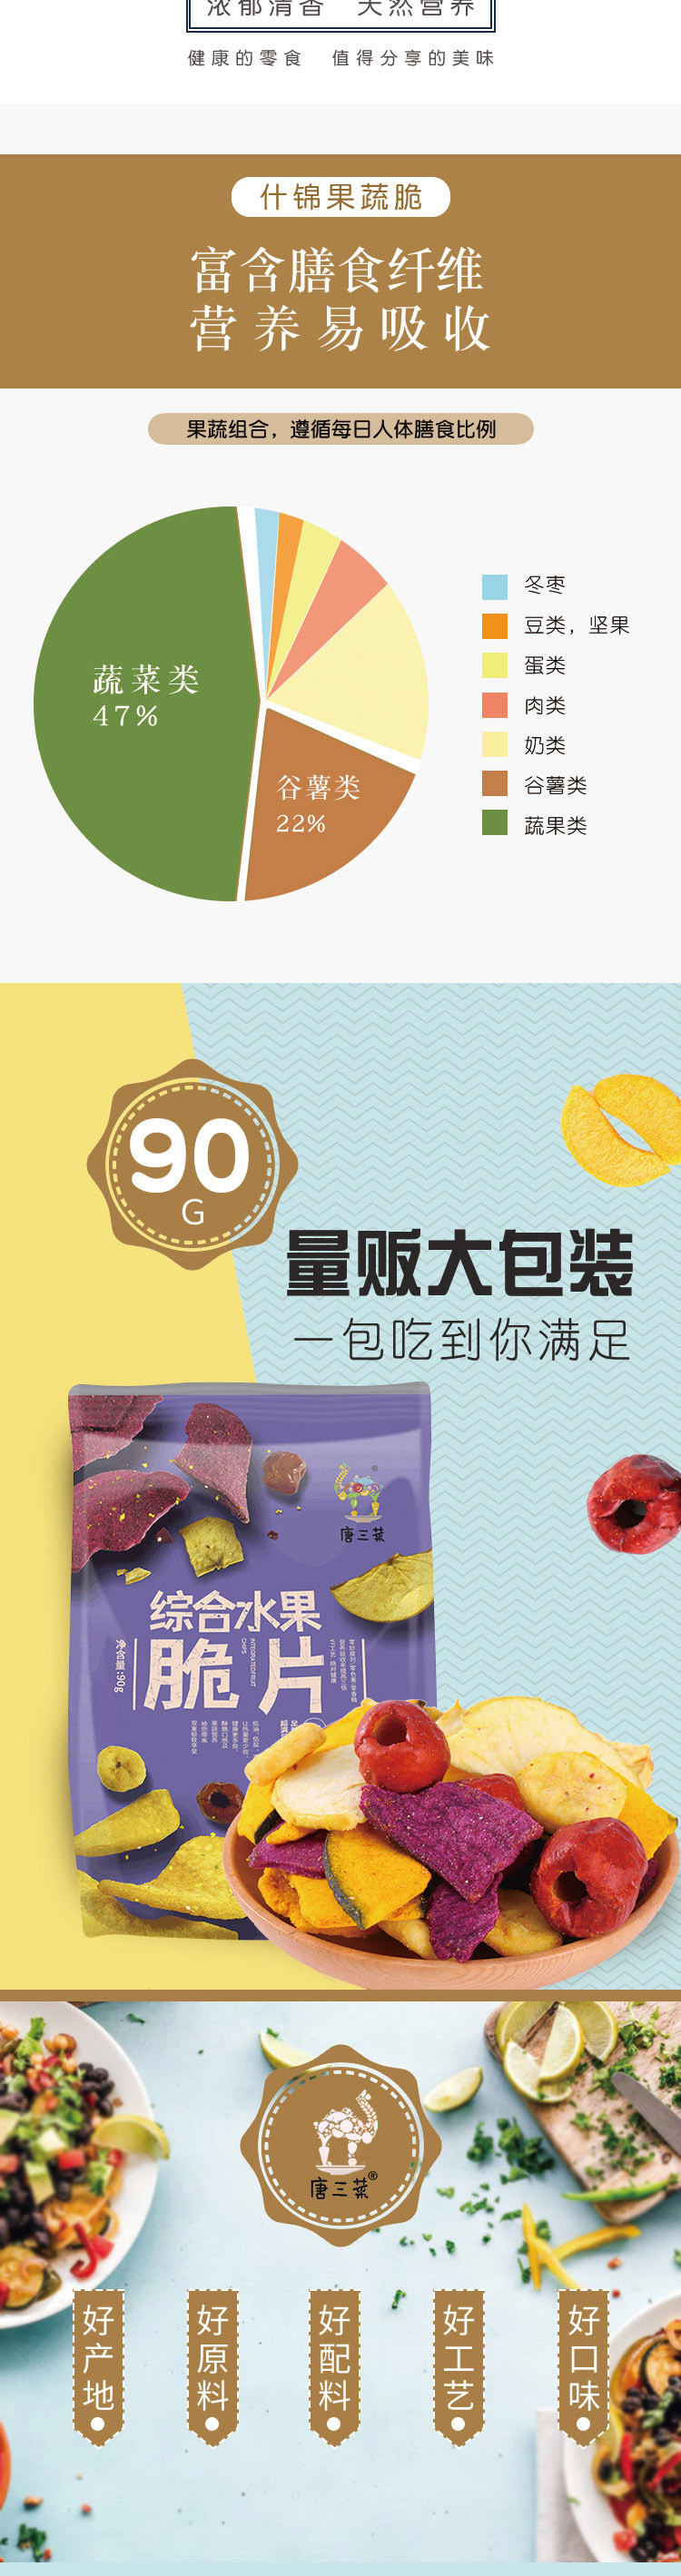 【邮乐洛阳】唐三菜 综合水果脆片90g/包邮